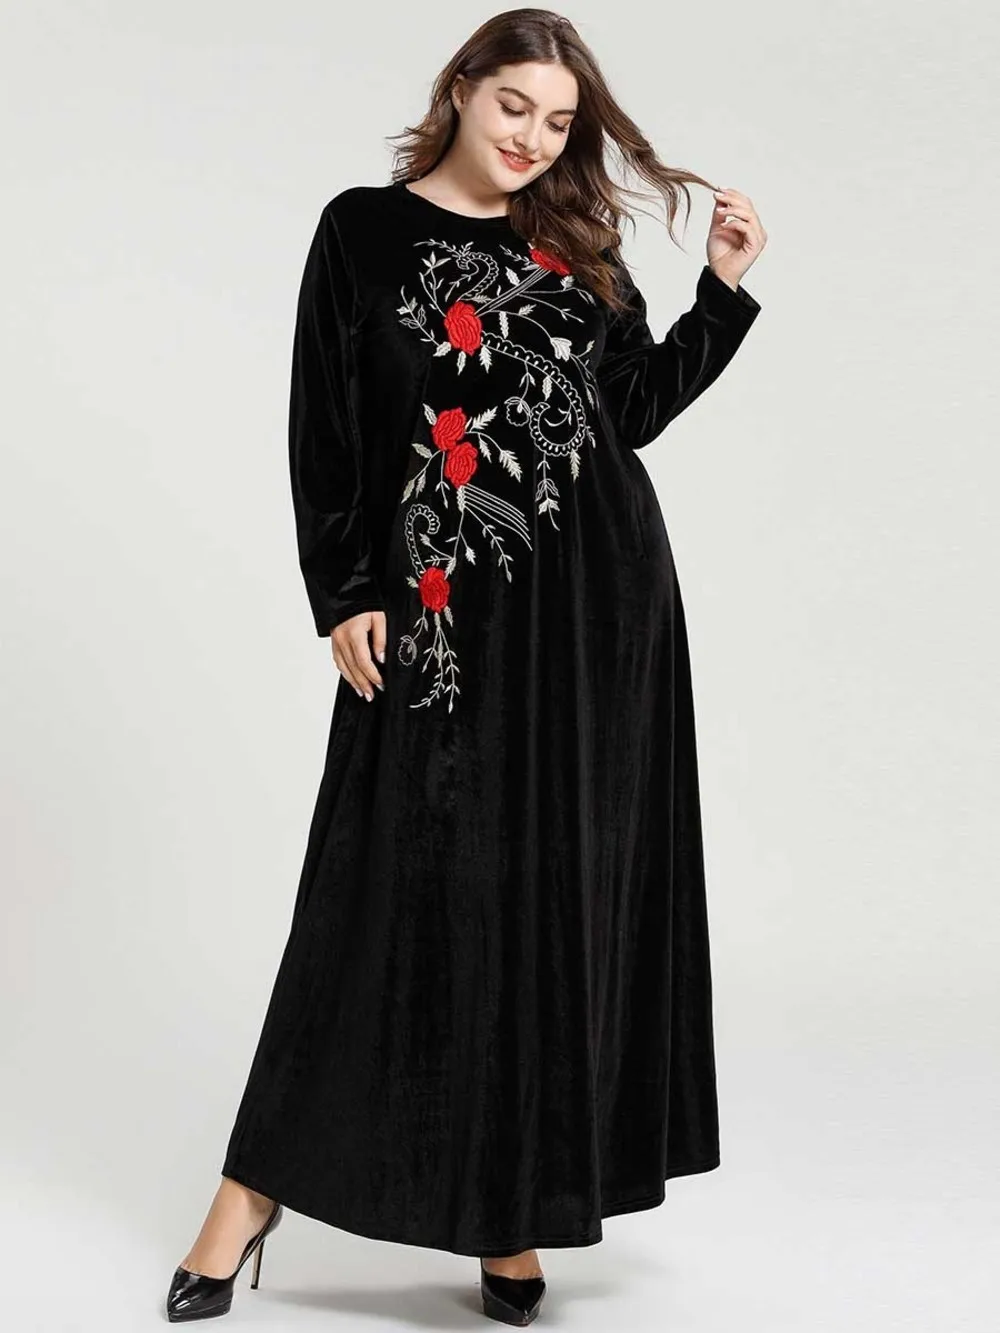 Hot Long Islam Dress Turkish Islamic Clothing For Women Girls | Тематическая одежда и униформа